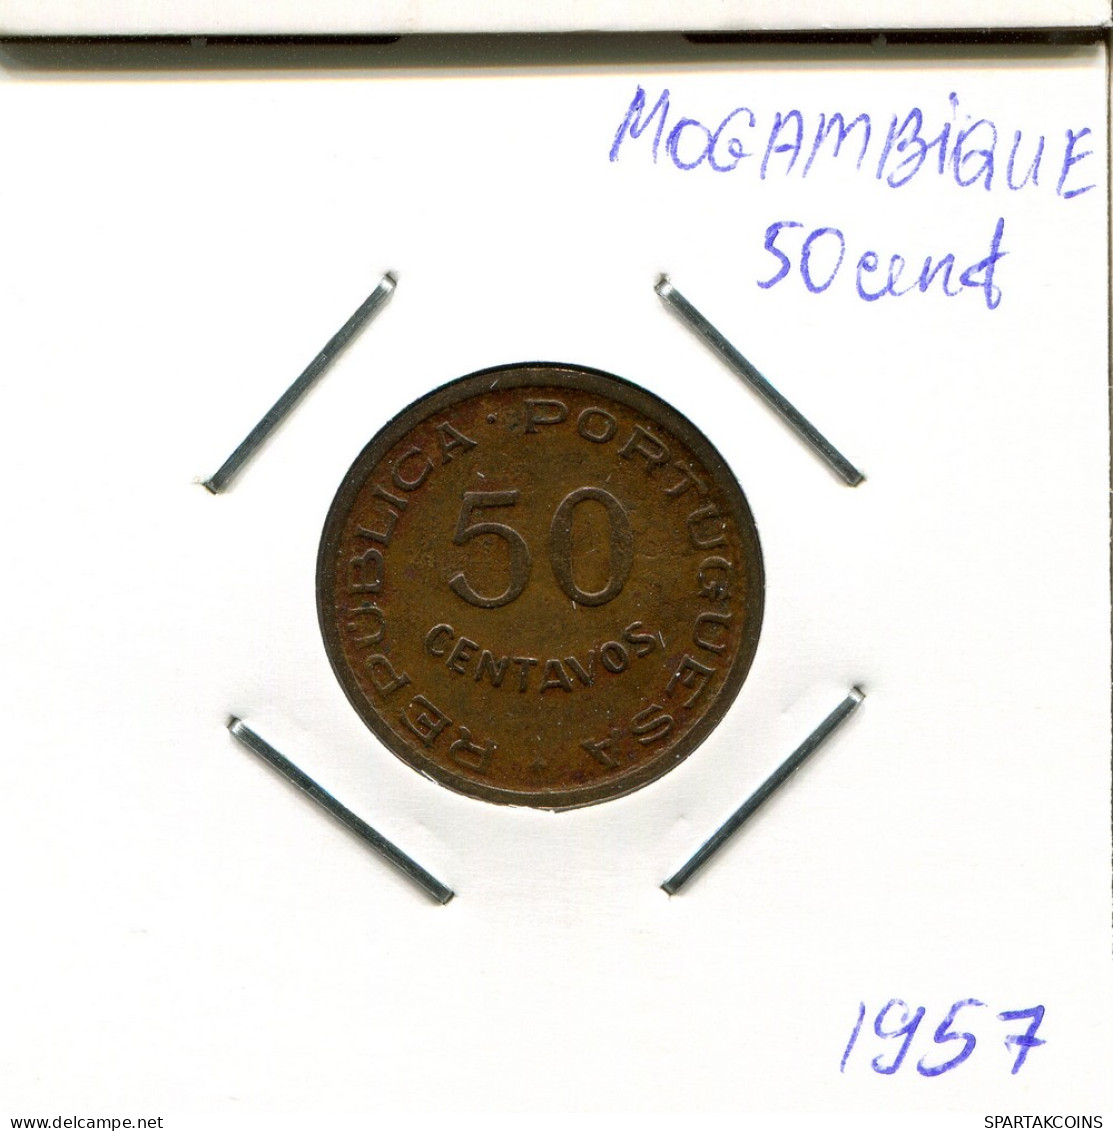 50 CENTAVOS 1957 MOZAMBIQUE Coin #AR708.U - Mozambique